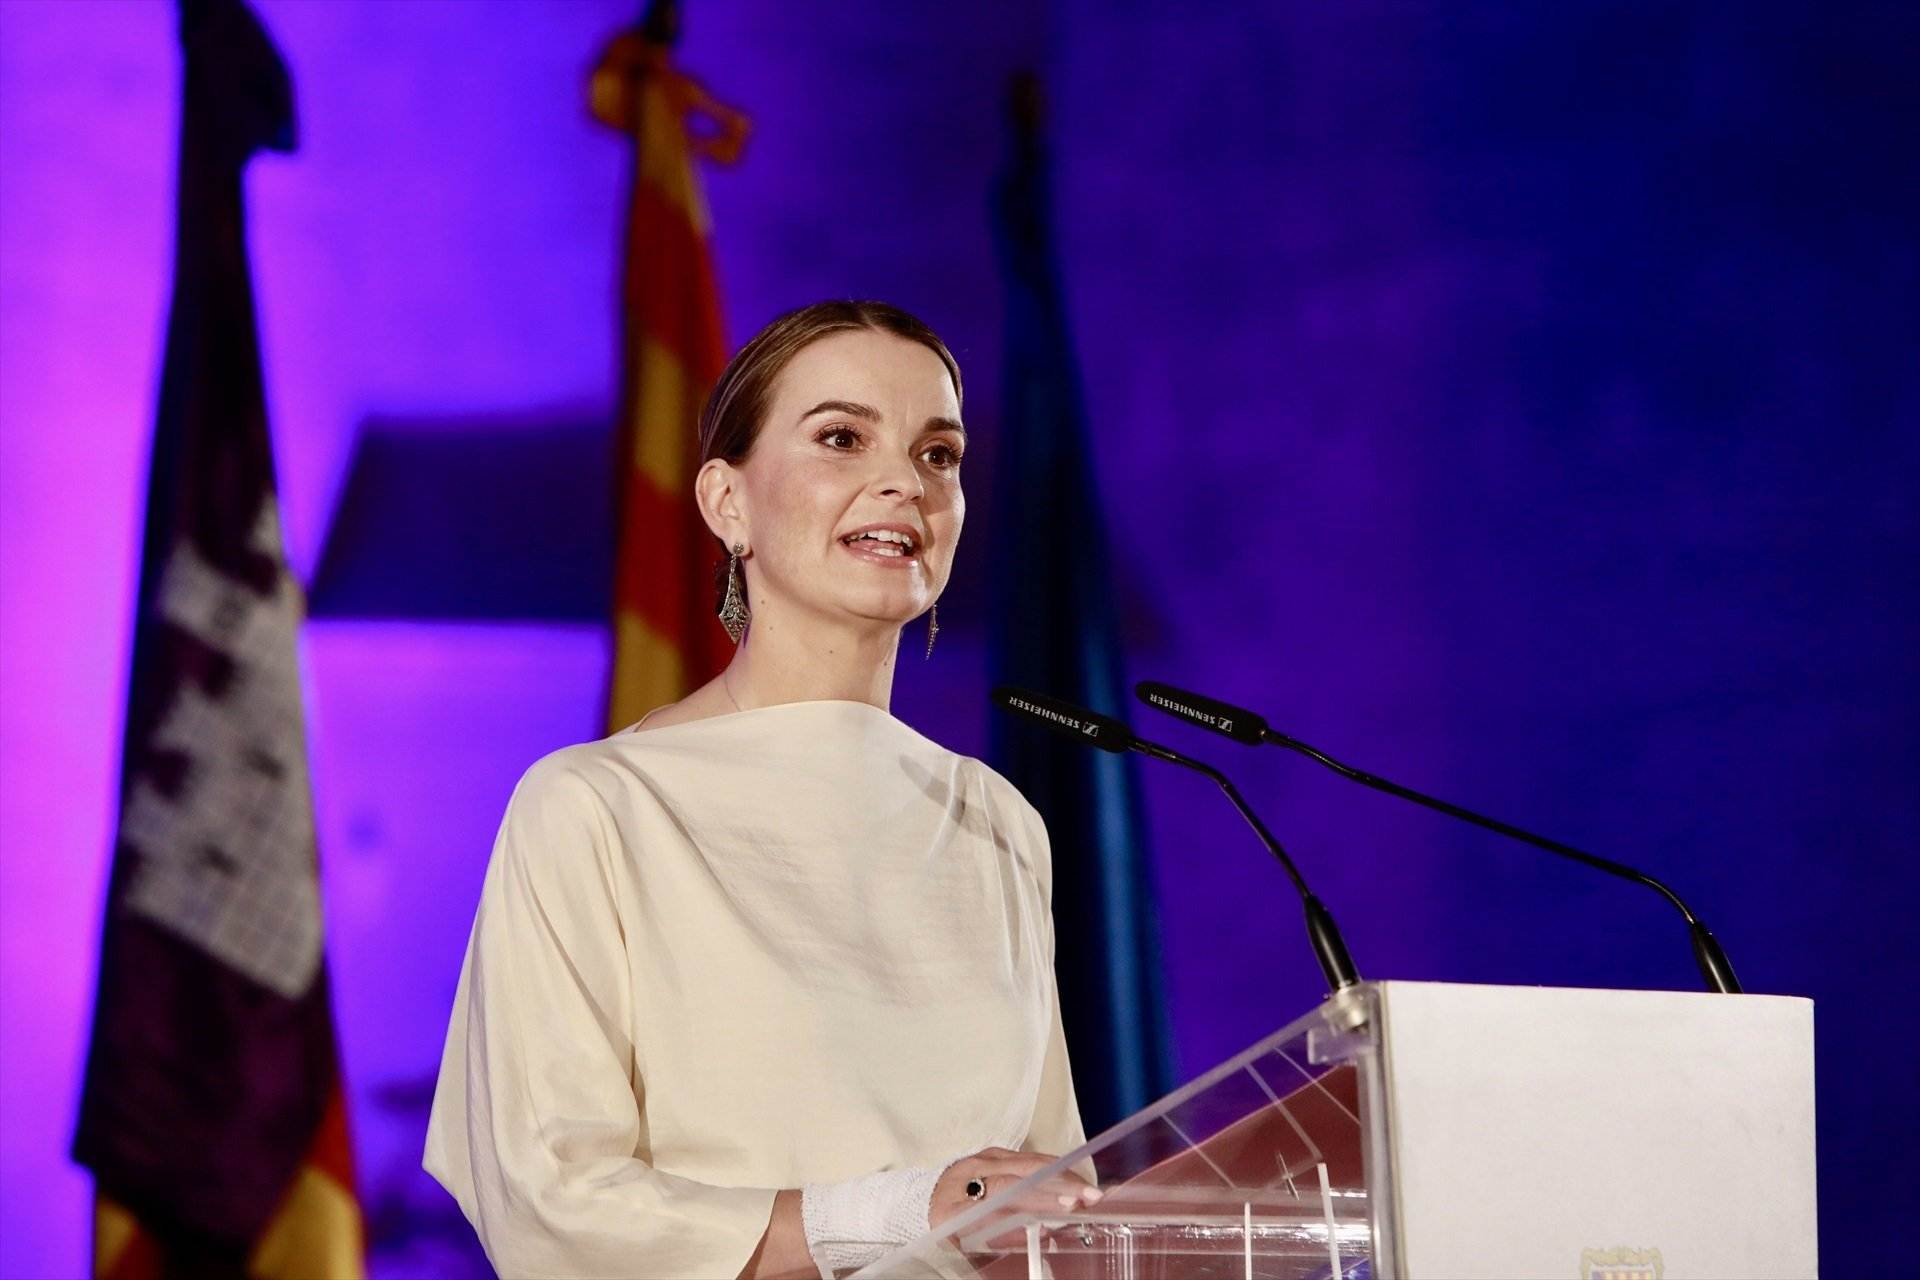 La presidenta balear defensa l'eliminació del requisit del català perquè "la salut és el primer"